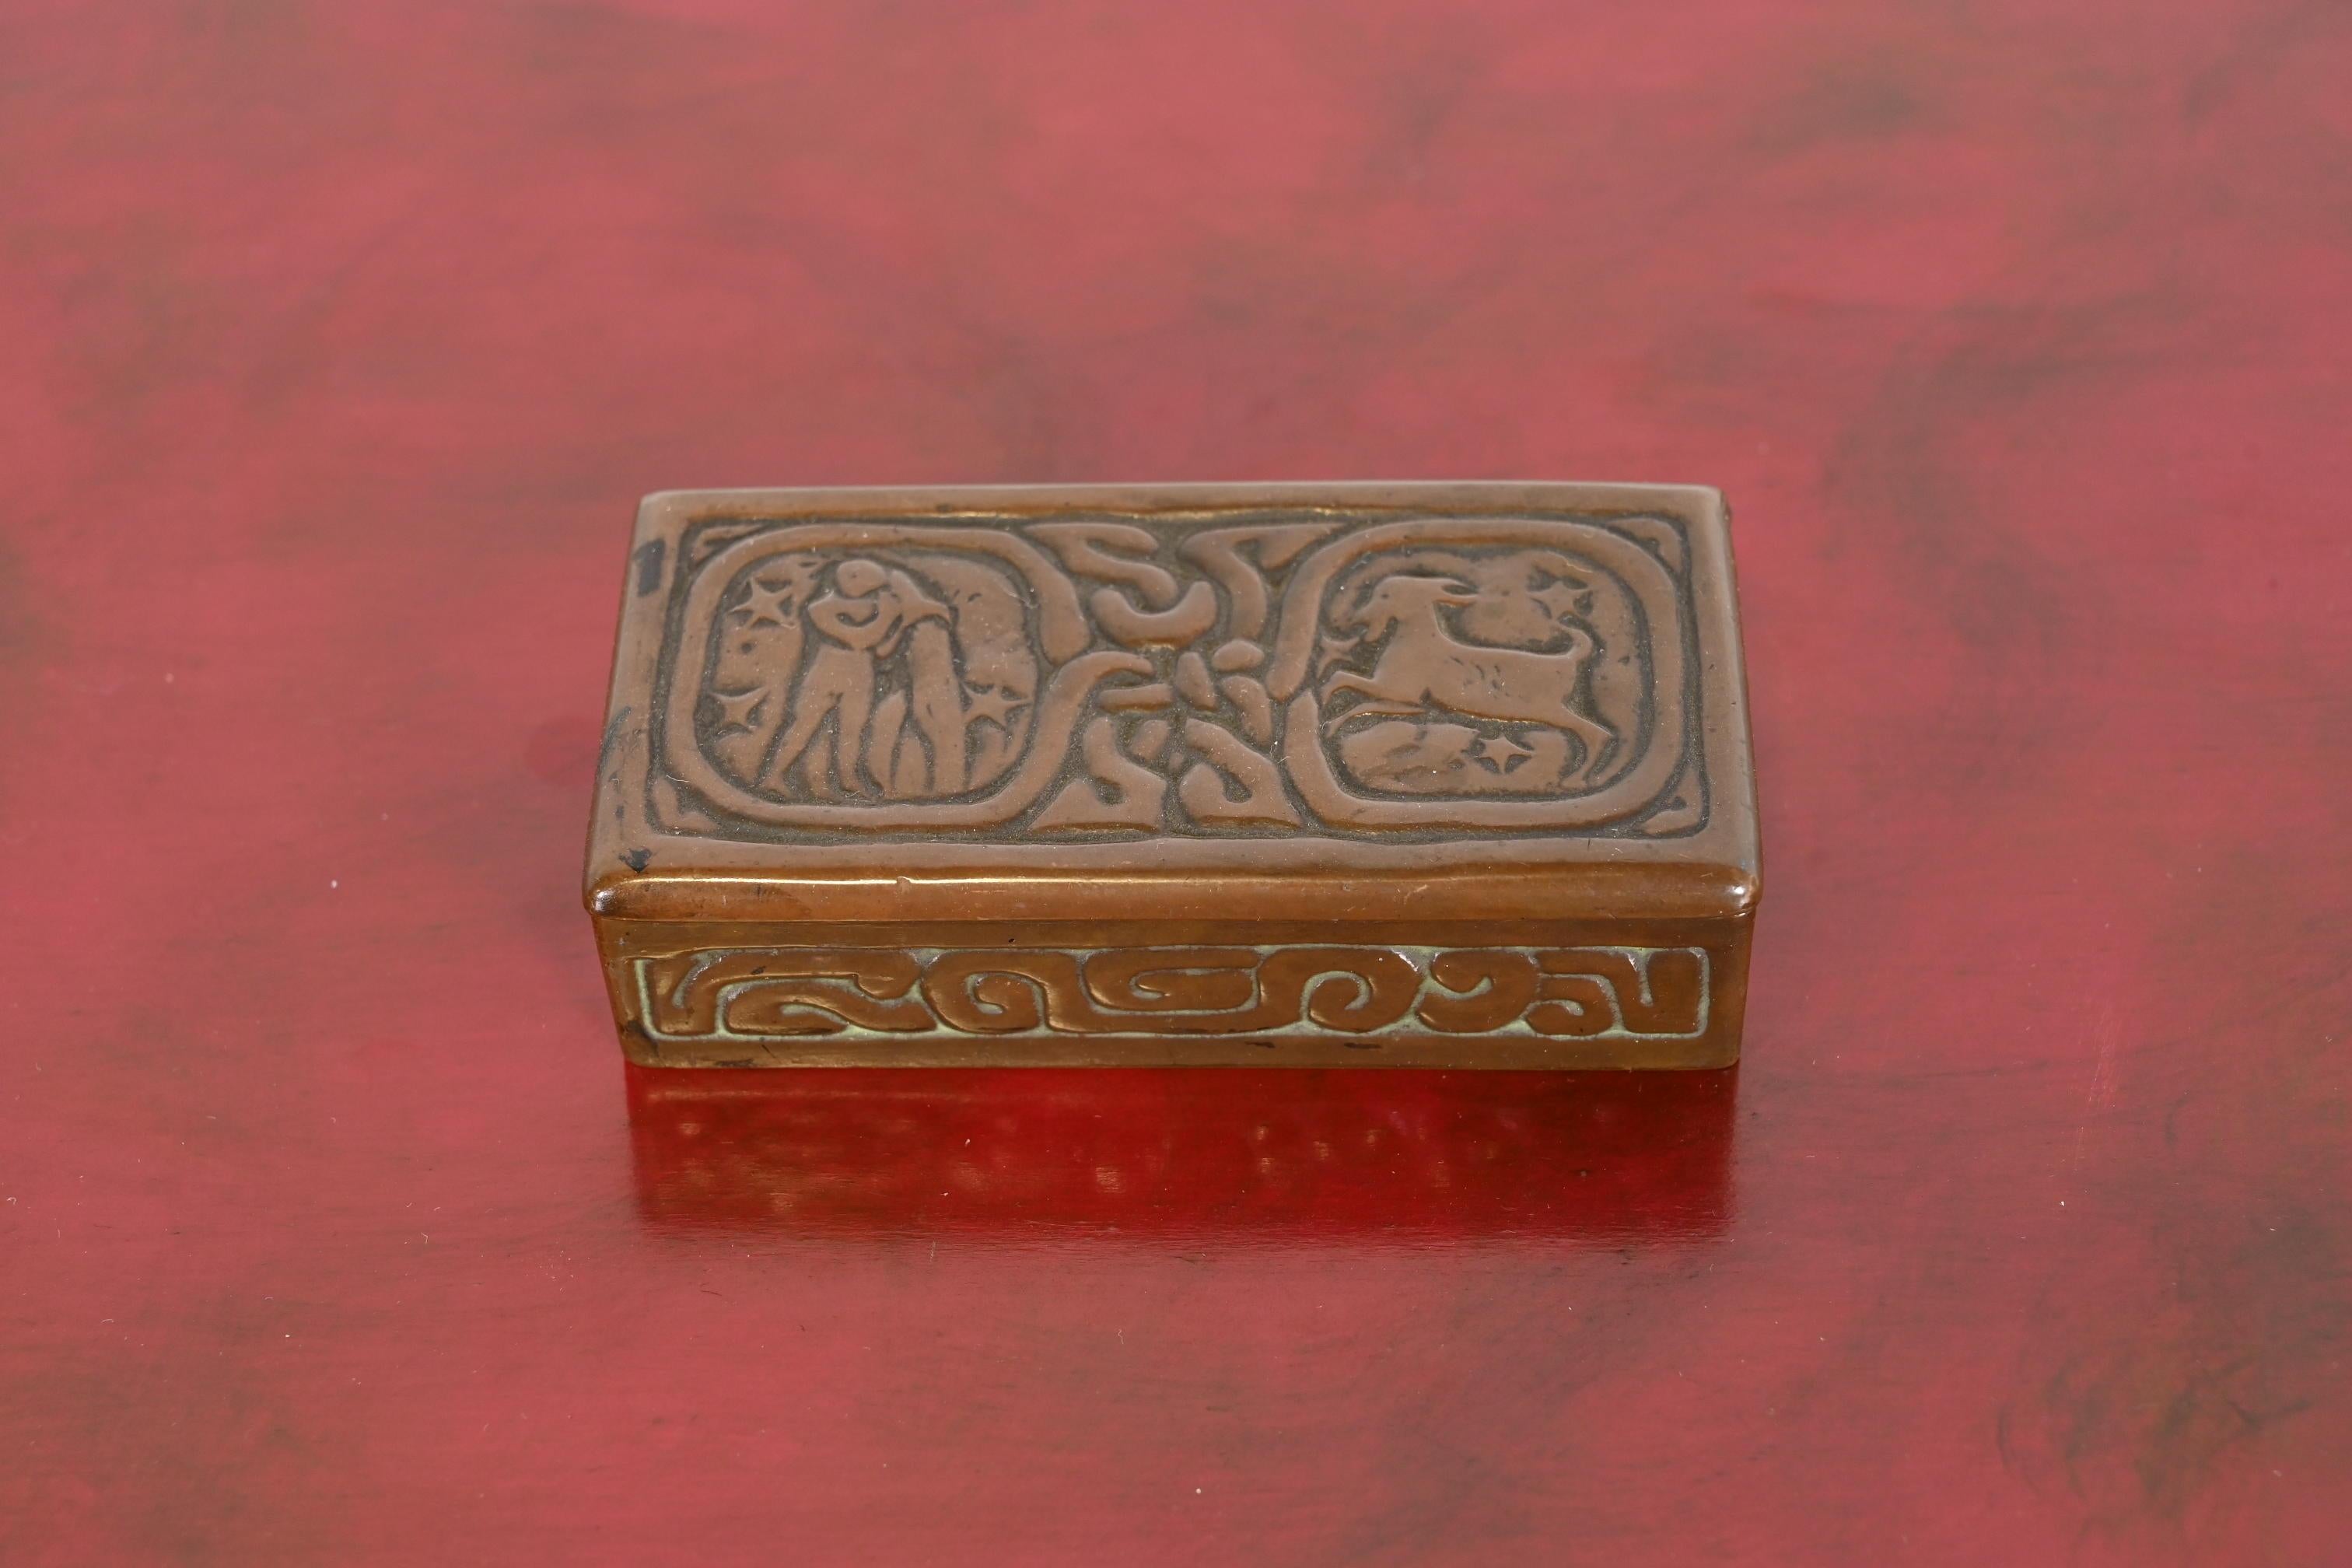 Une superbe boîte à timbres en bronze ancien, ornée de motifs du Zodiac.

Par Tiffany Studios (signé sur le dessous)

New York, États-Unis, Début du XXe siècle

Dimensions : 3,75 